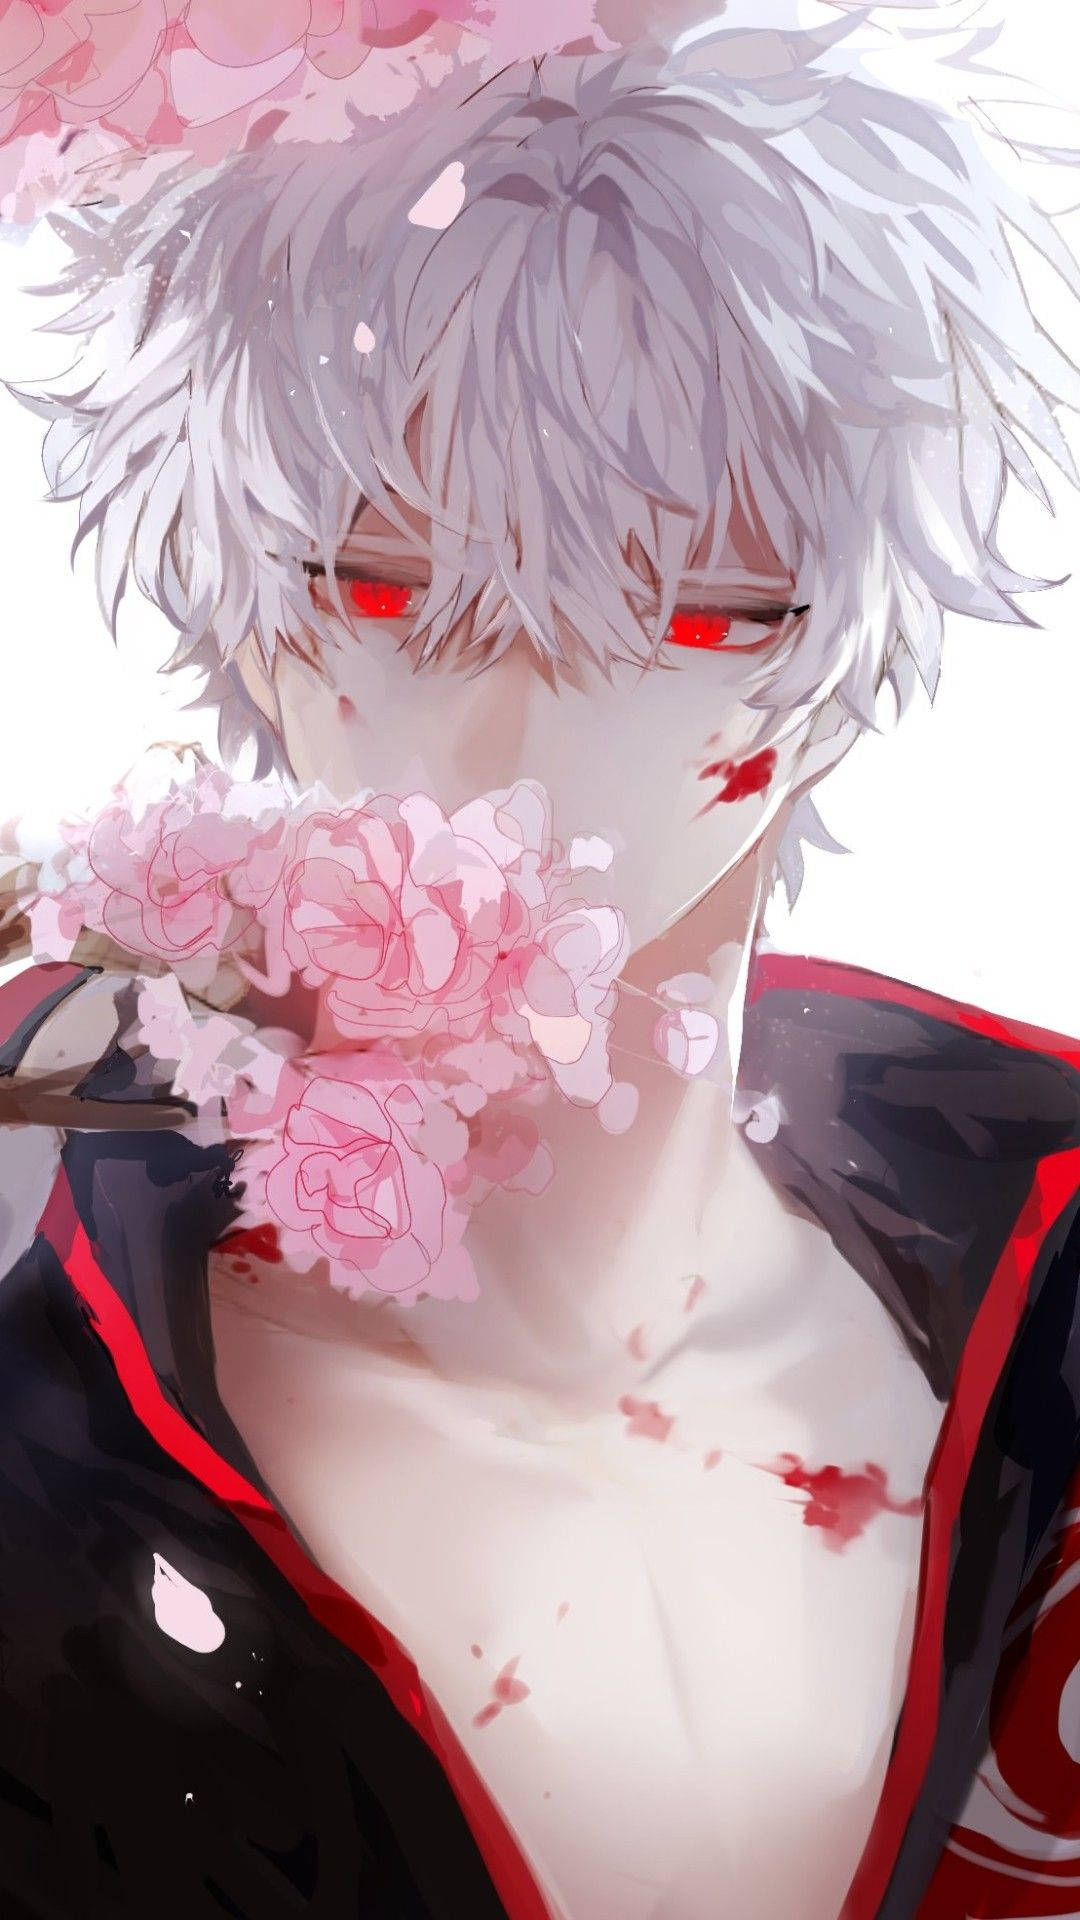 Red-eyed Aesthetic Anime Boy Background